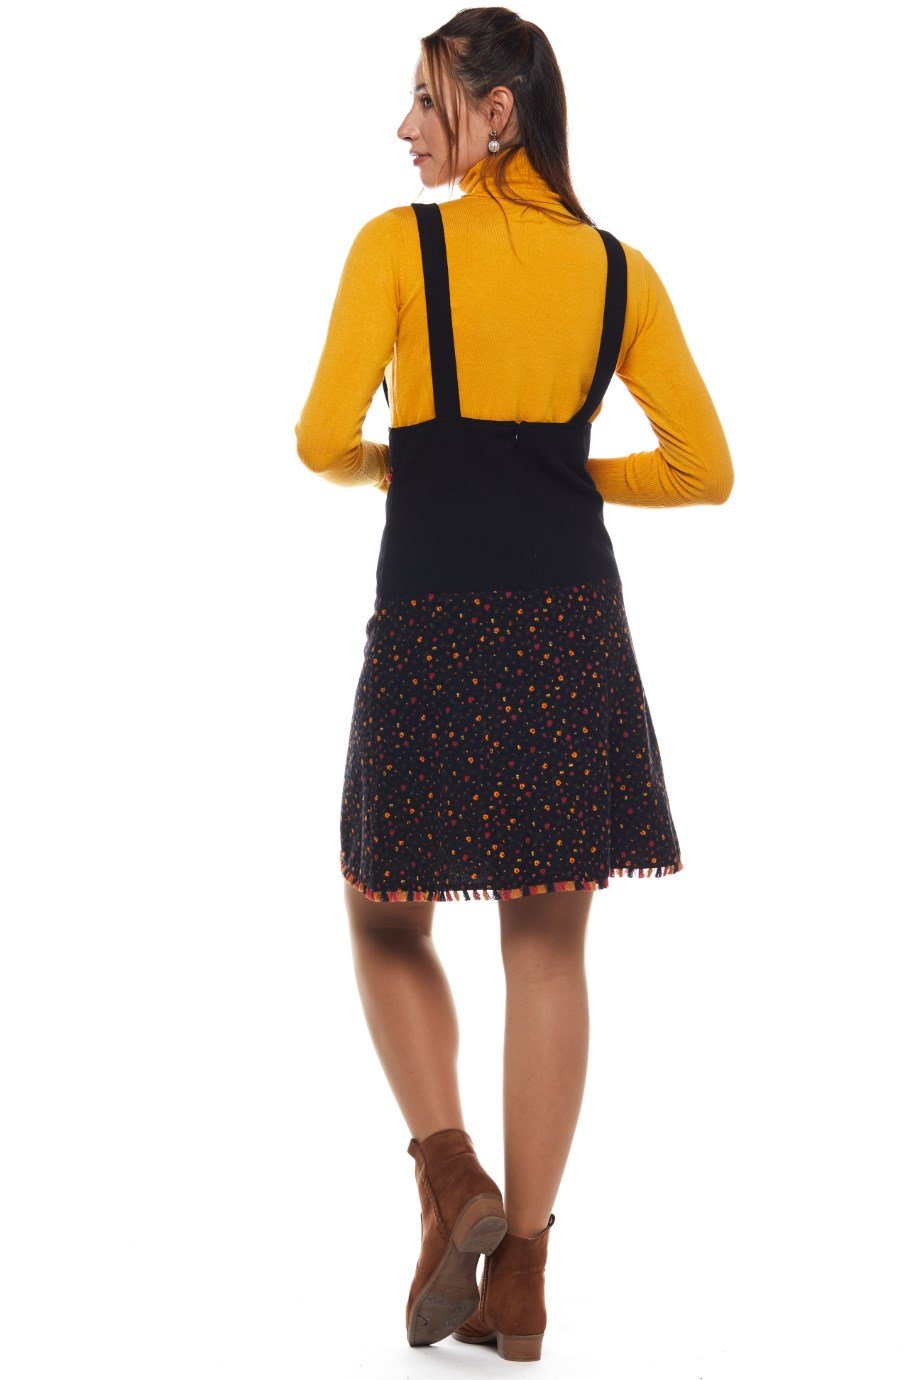 Black Salopet Crispy Pattern Short Skirt